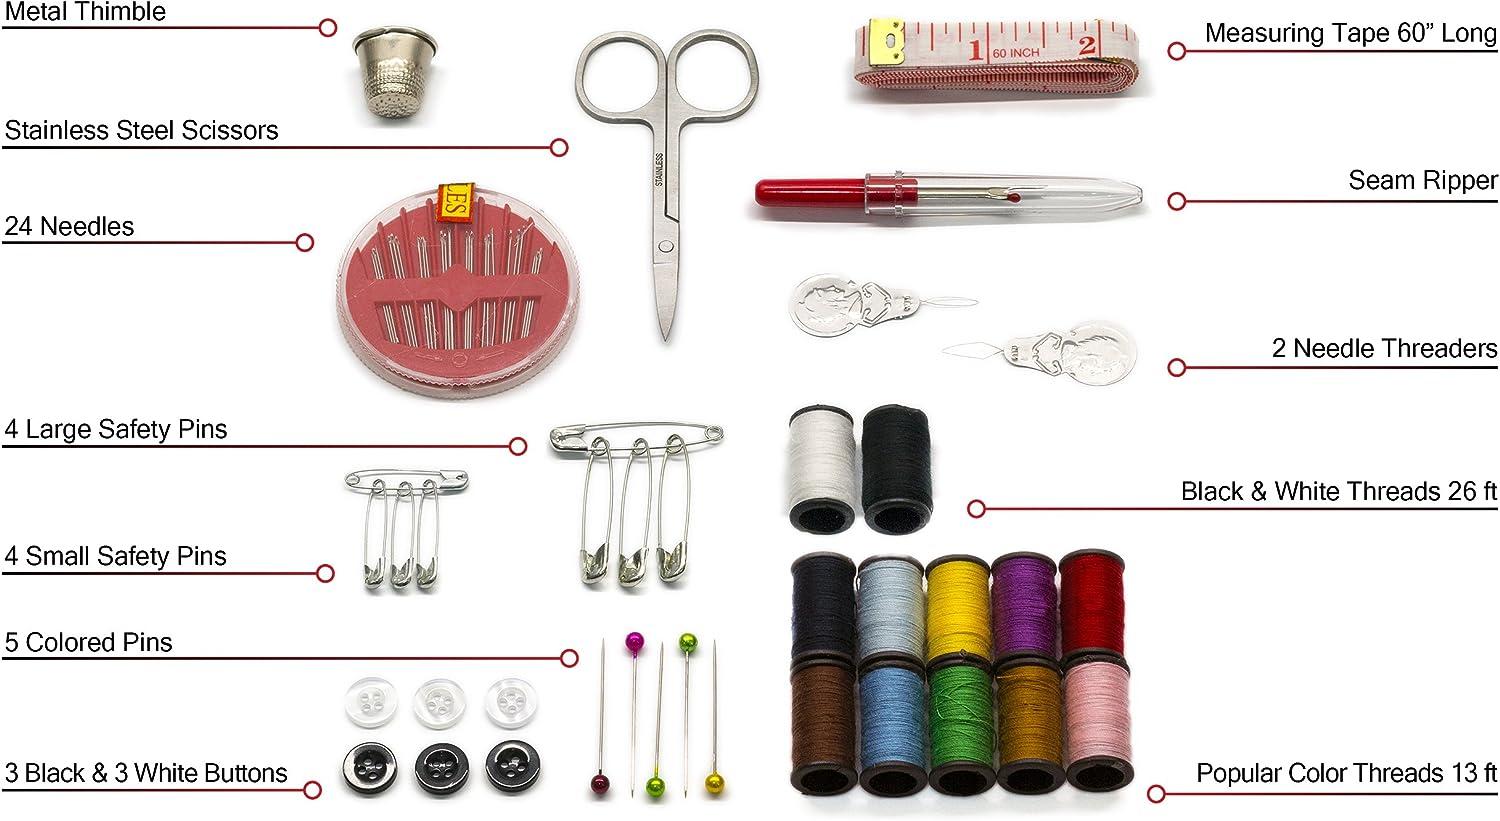 24 Sets Travel Sewing Kit - Sewing Supplies - at 